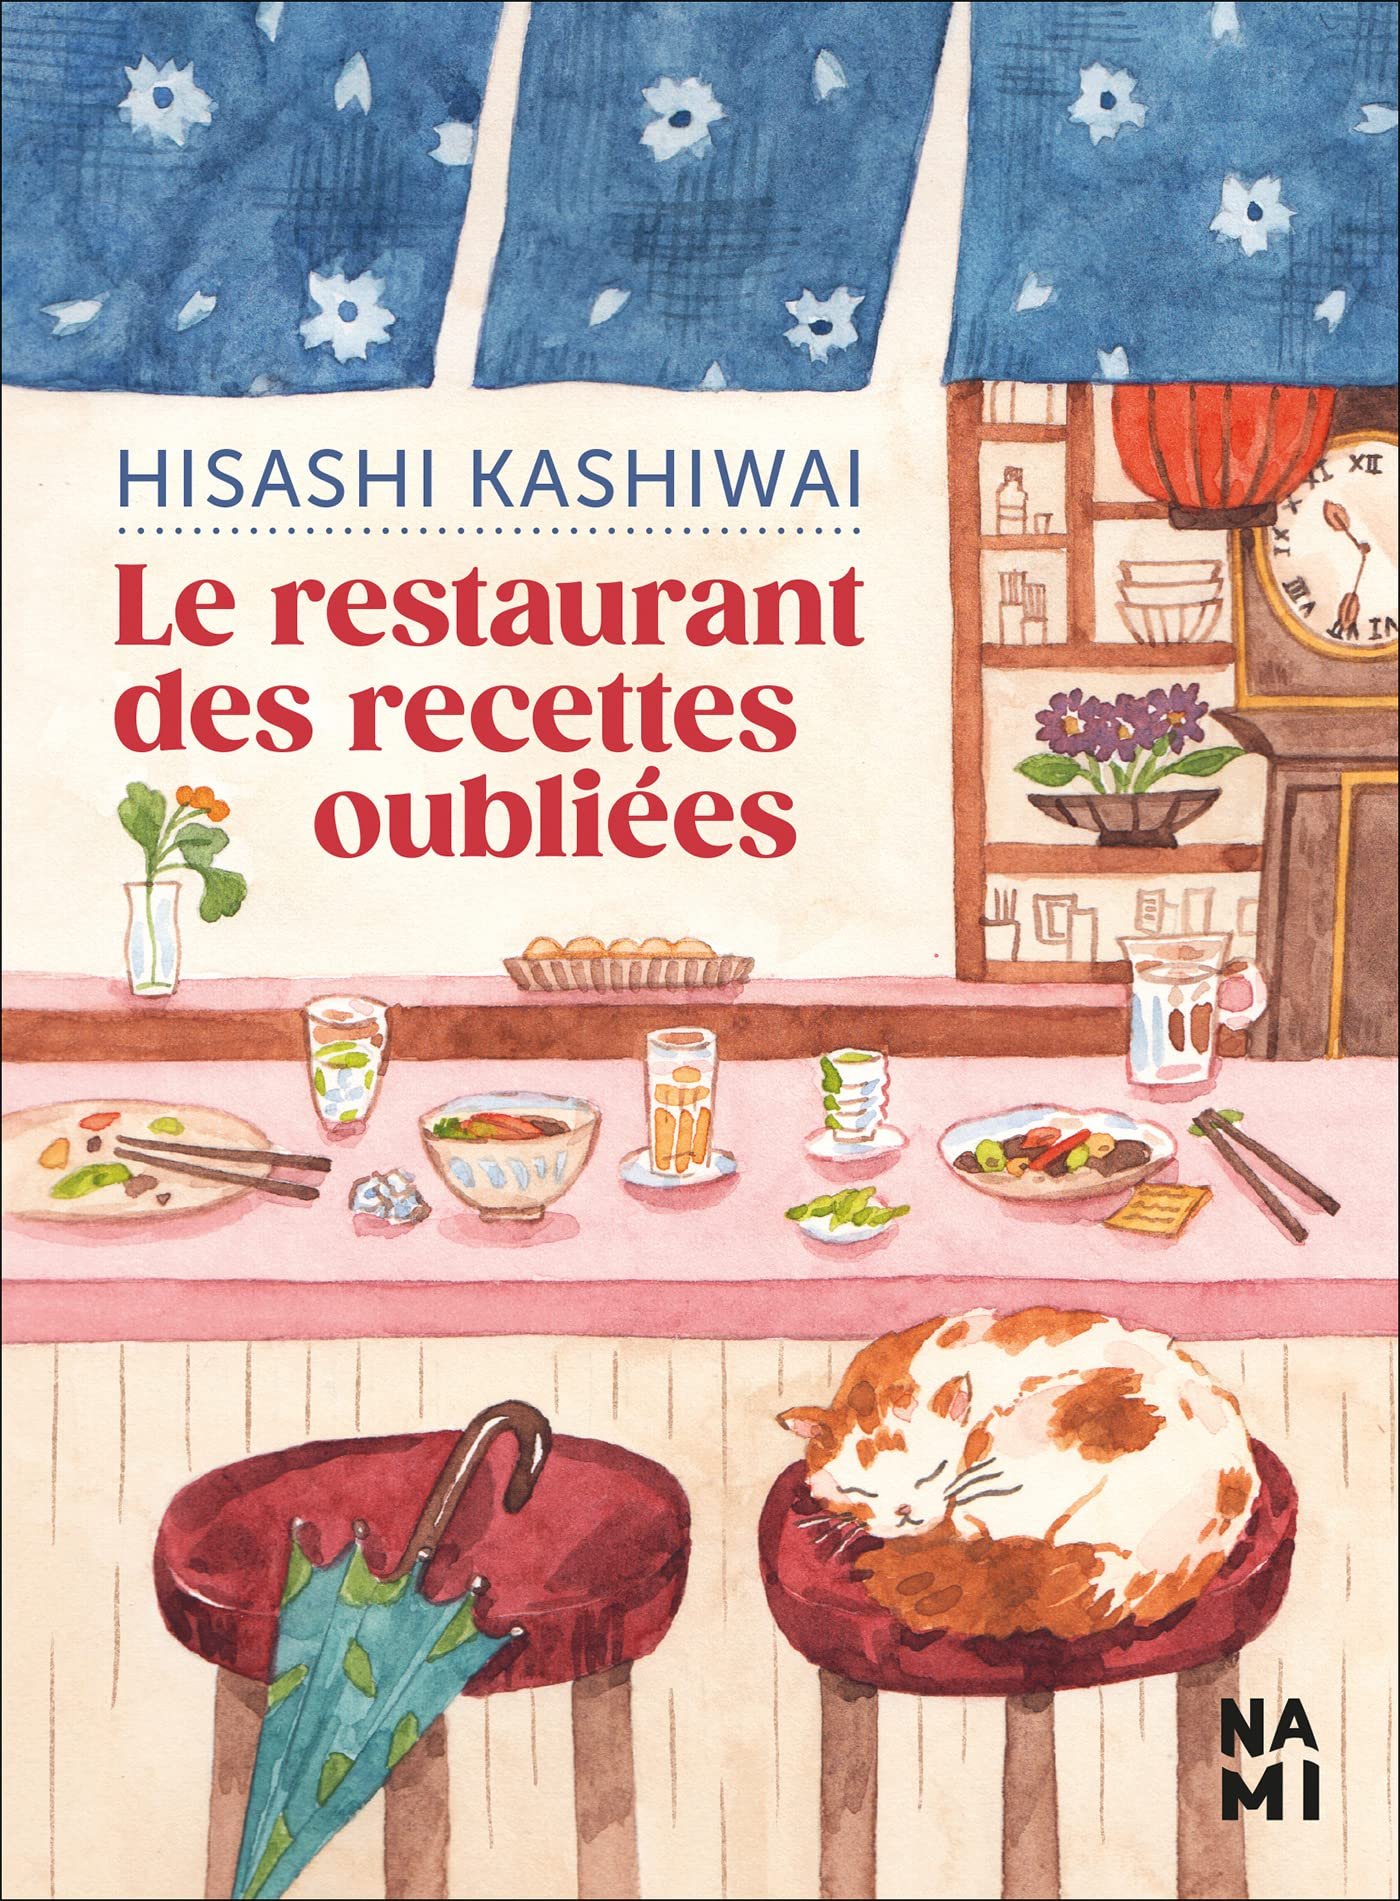 Hisashi Kashiwai – Le restaurant des recettes oubliées